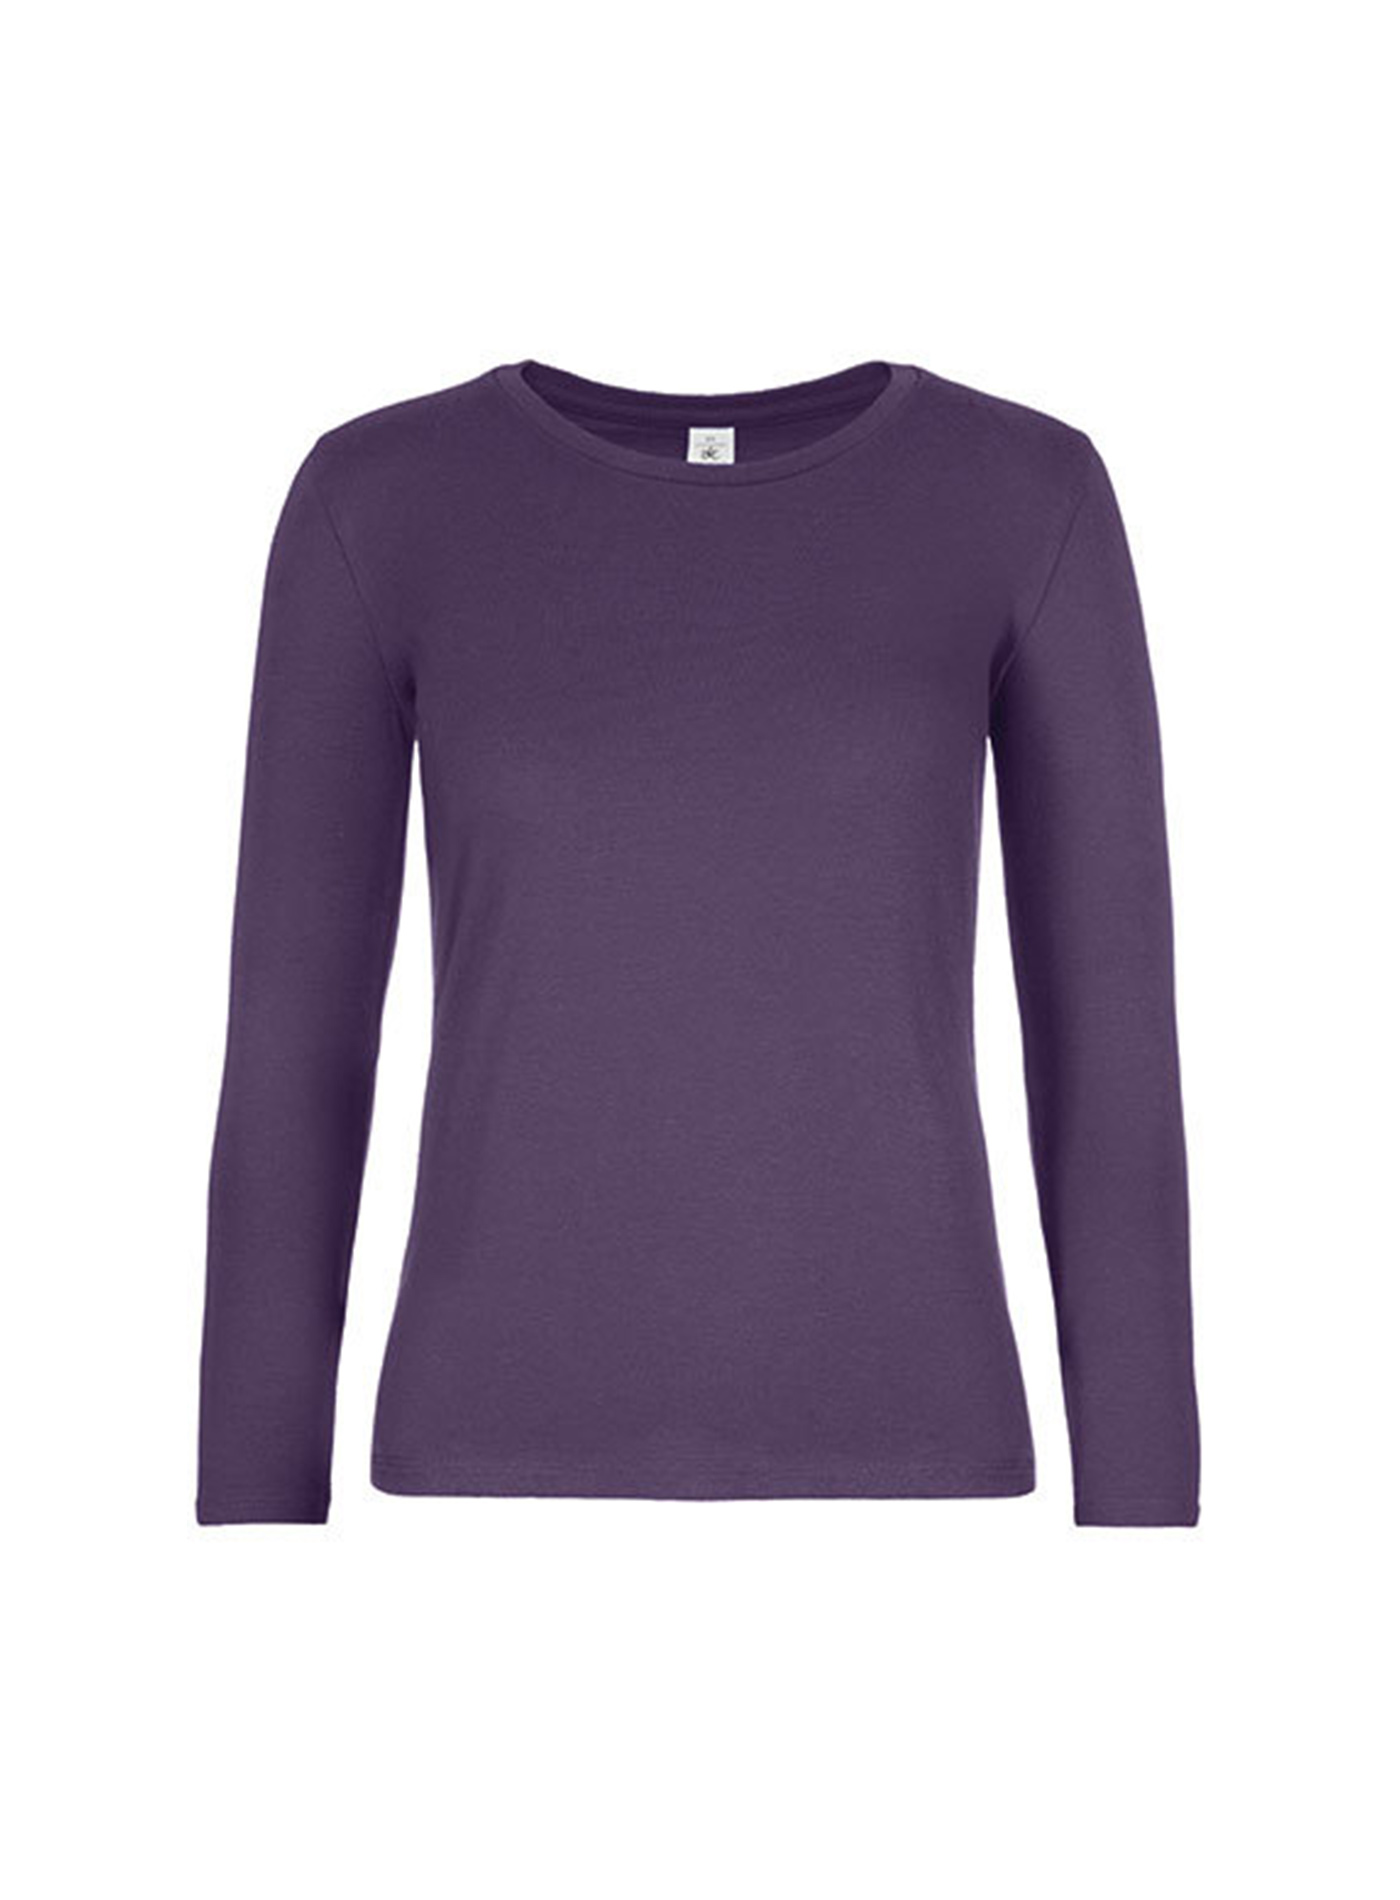 Dámské tričko s dlouhým rukávem B&C Collection - Tmavě fialová XXL